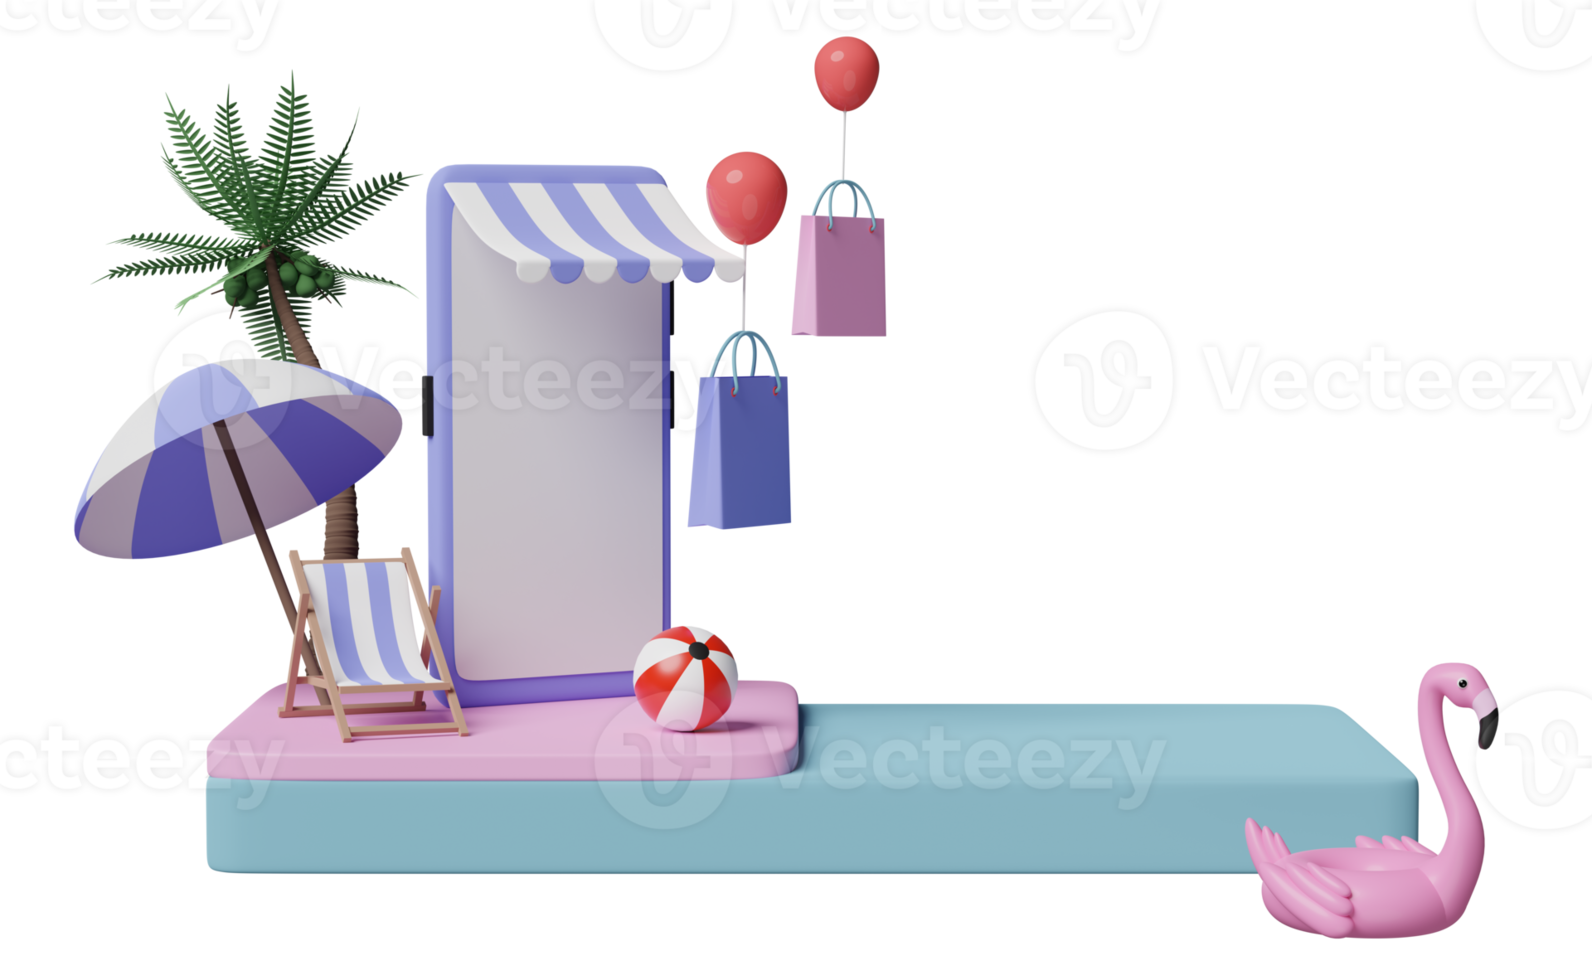 3D-Bühnenpodium mit Handy- oder Smartphone-Ladenfront, Strandkorb, aufblasbarer Flamingo, Palmblatt, Einkaufspapiertüten, Online-Shopping-Sommerverkaufskonzept, 3D-Darstellung png